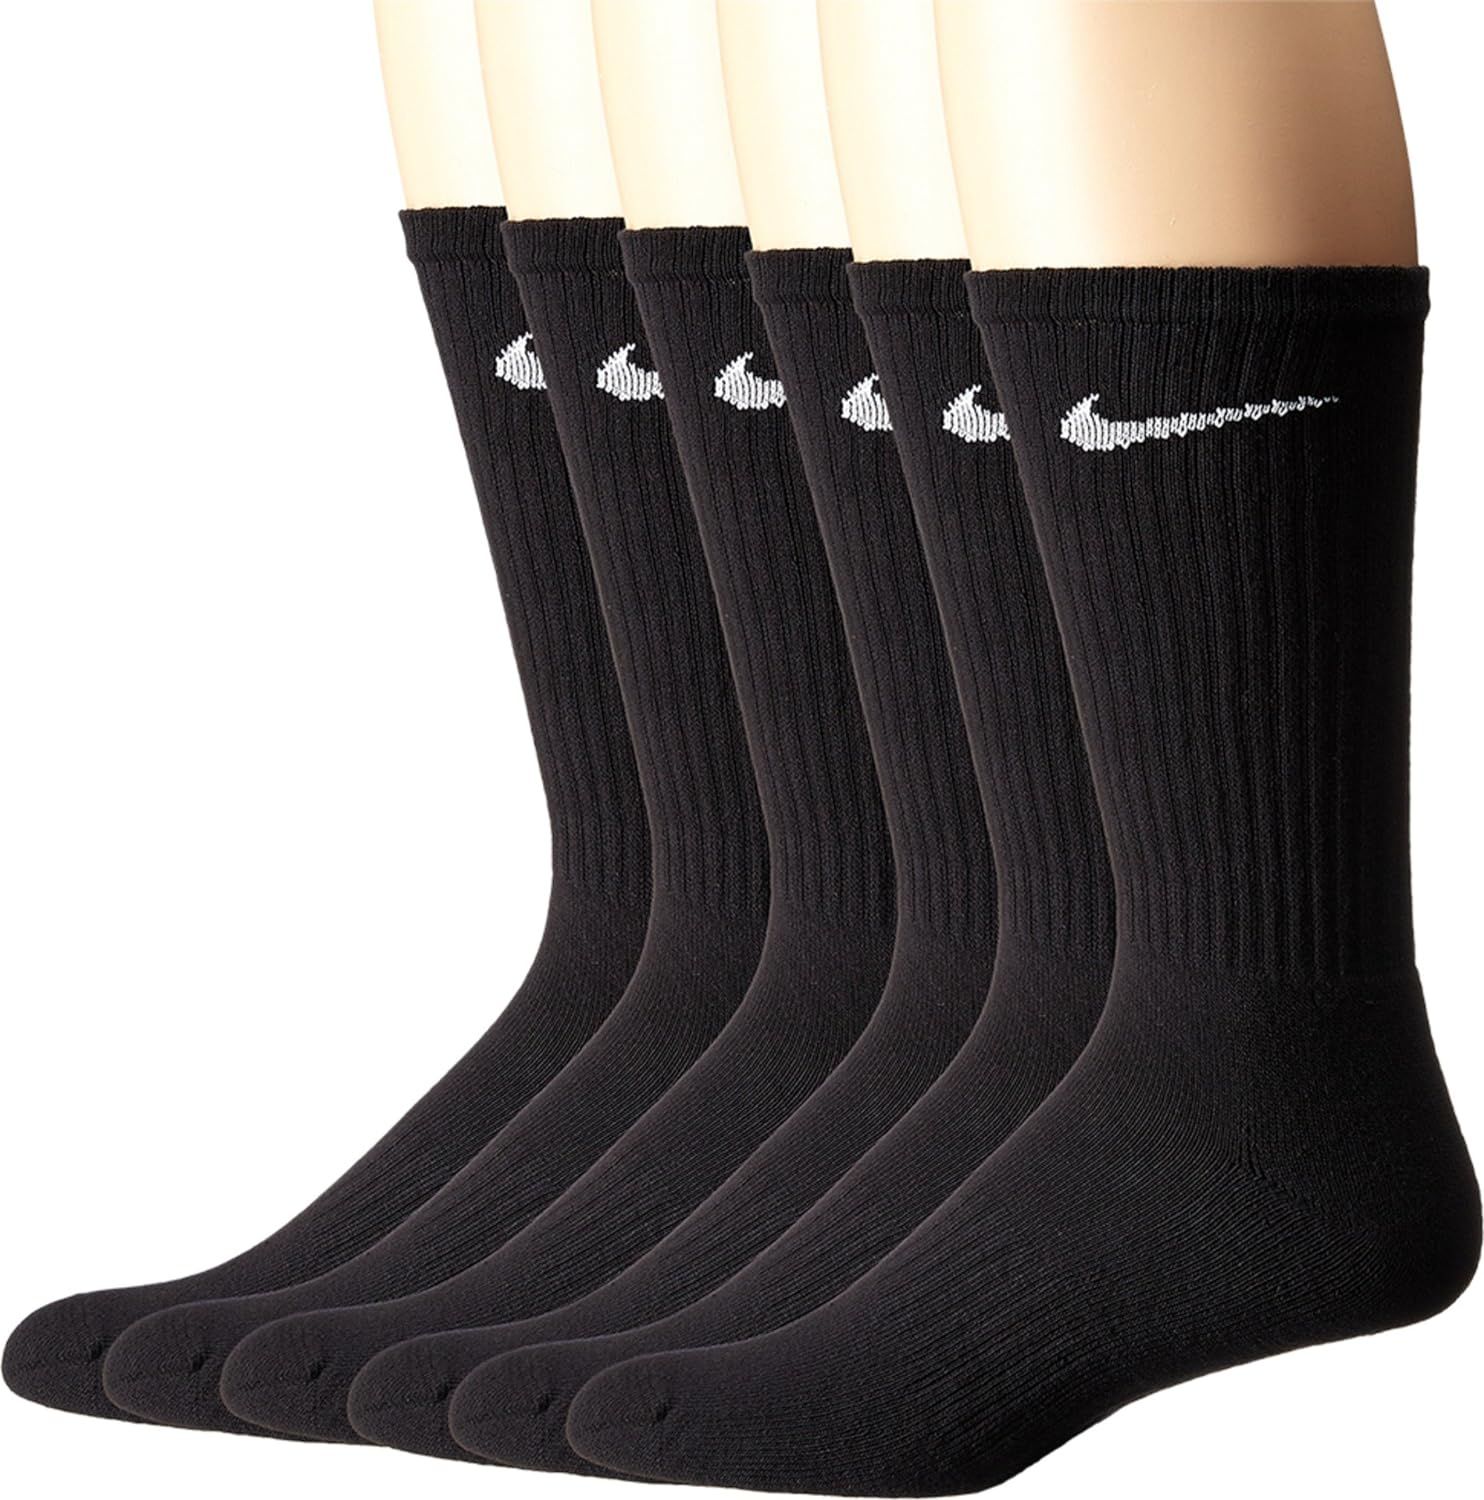 NIKE Unisex Performance Cushion Crew Socks with Band (6 Pairs), Black/White, Large | Amazon (US)